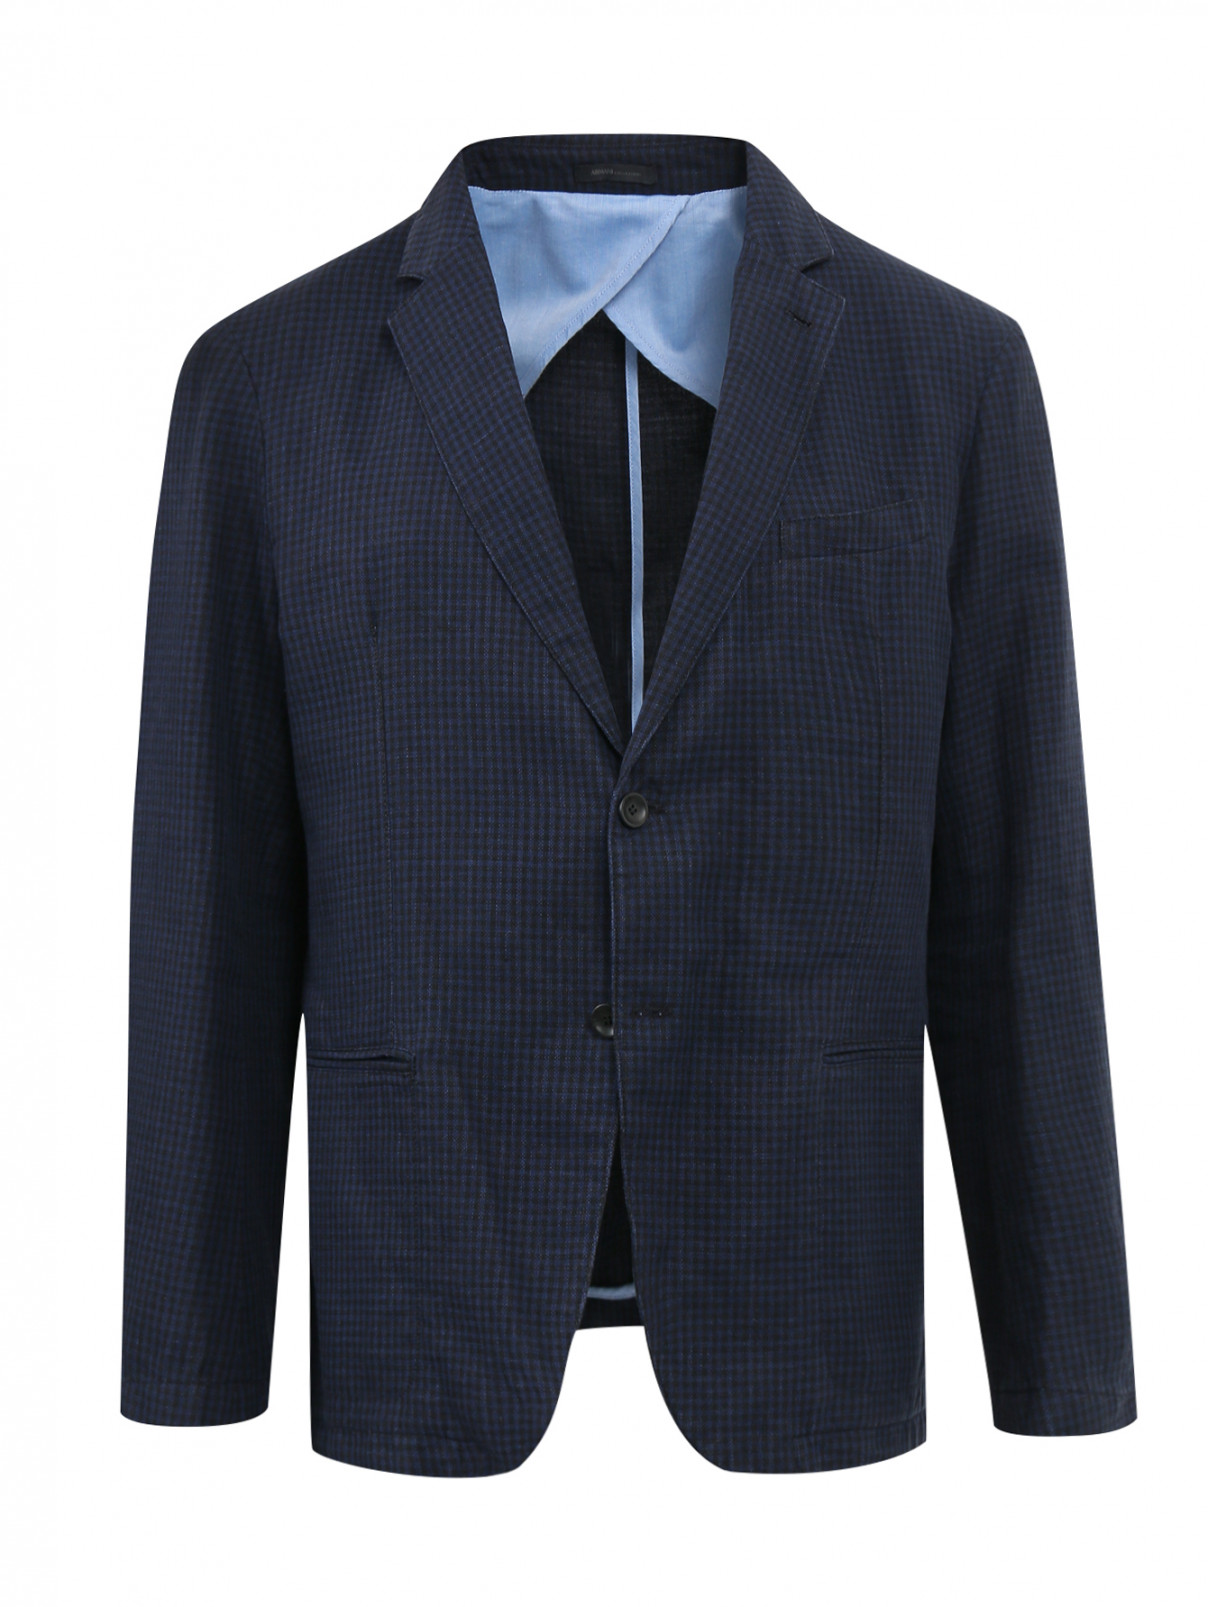 Пиджак из хлопка и льна с узором "клетка" Armani Collezioni  –  Общий вид  – Цвет:  Синий